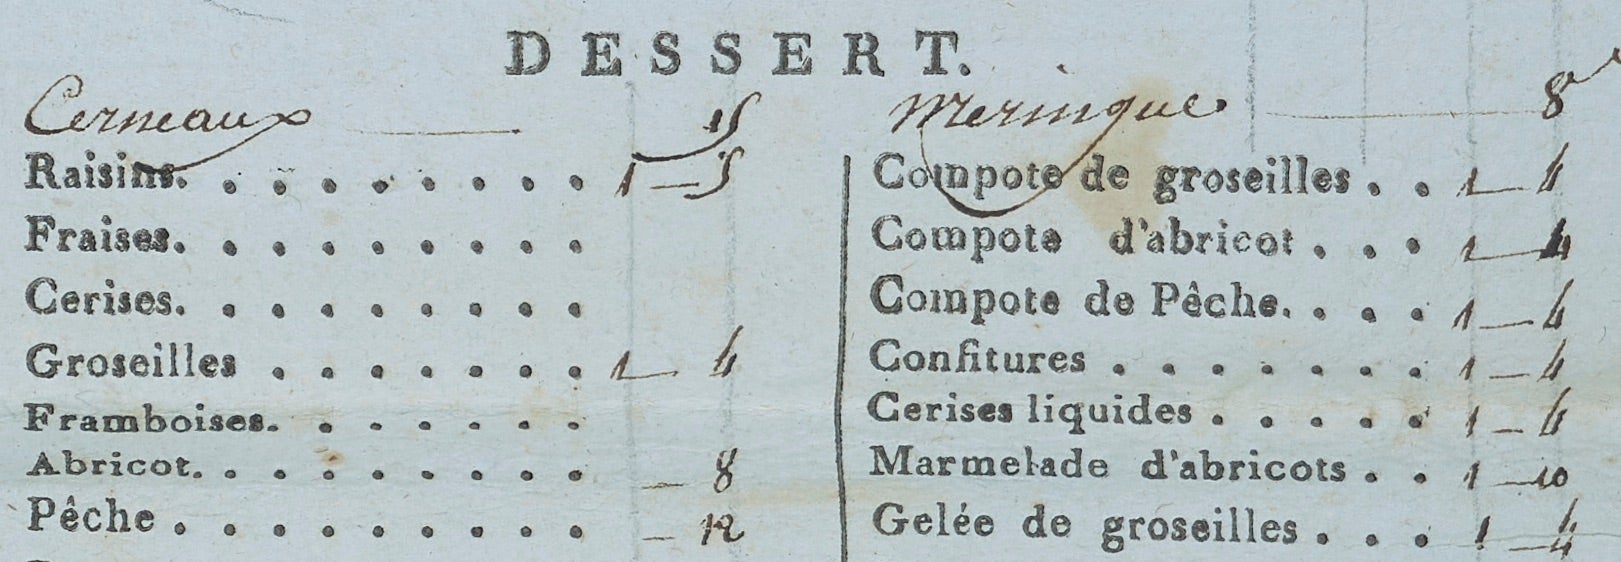 Beauvilliers 1802 dessert menu.